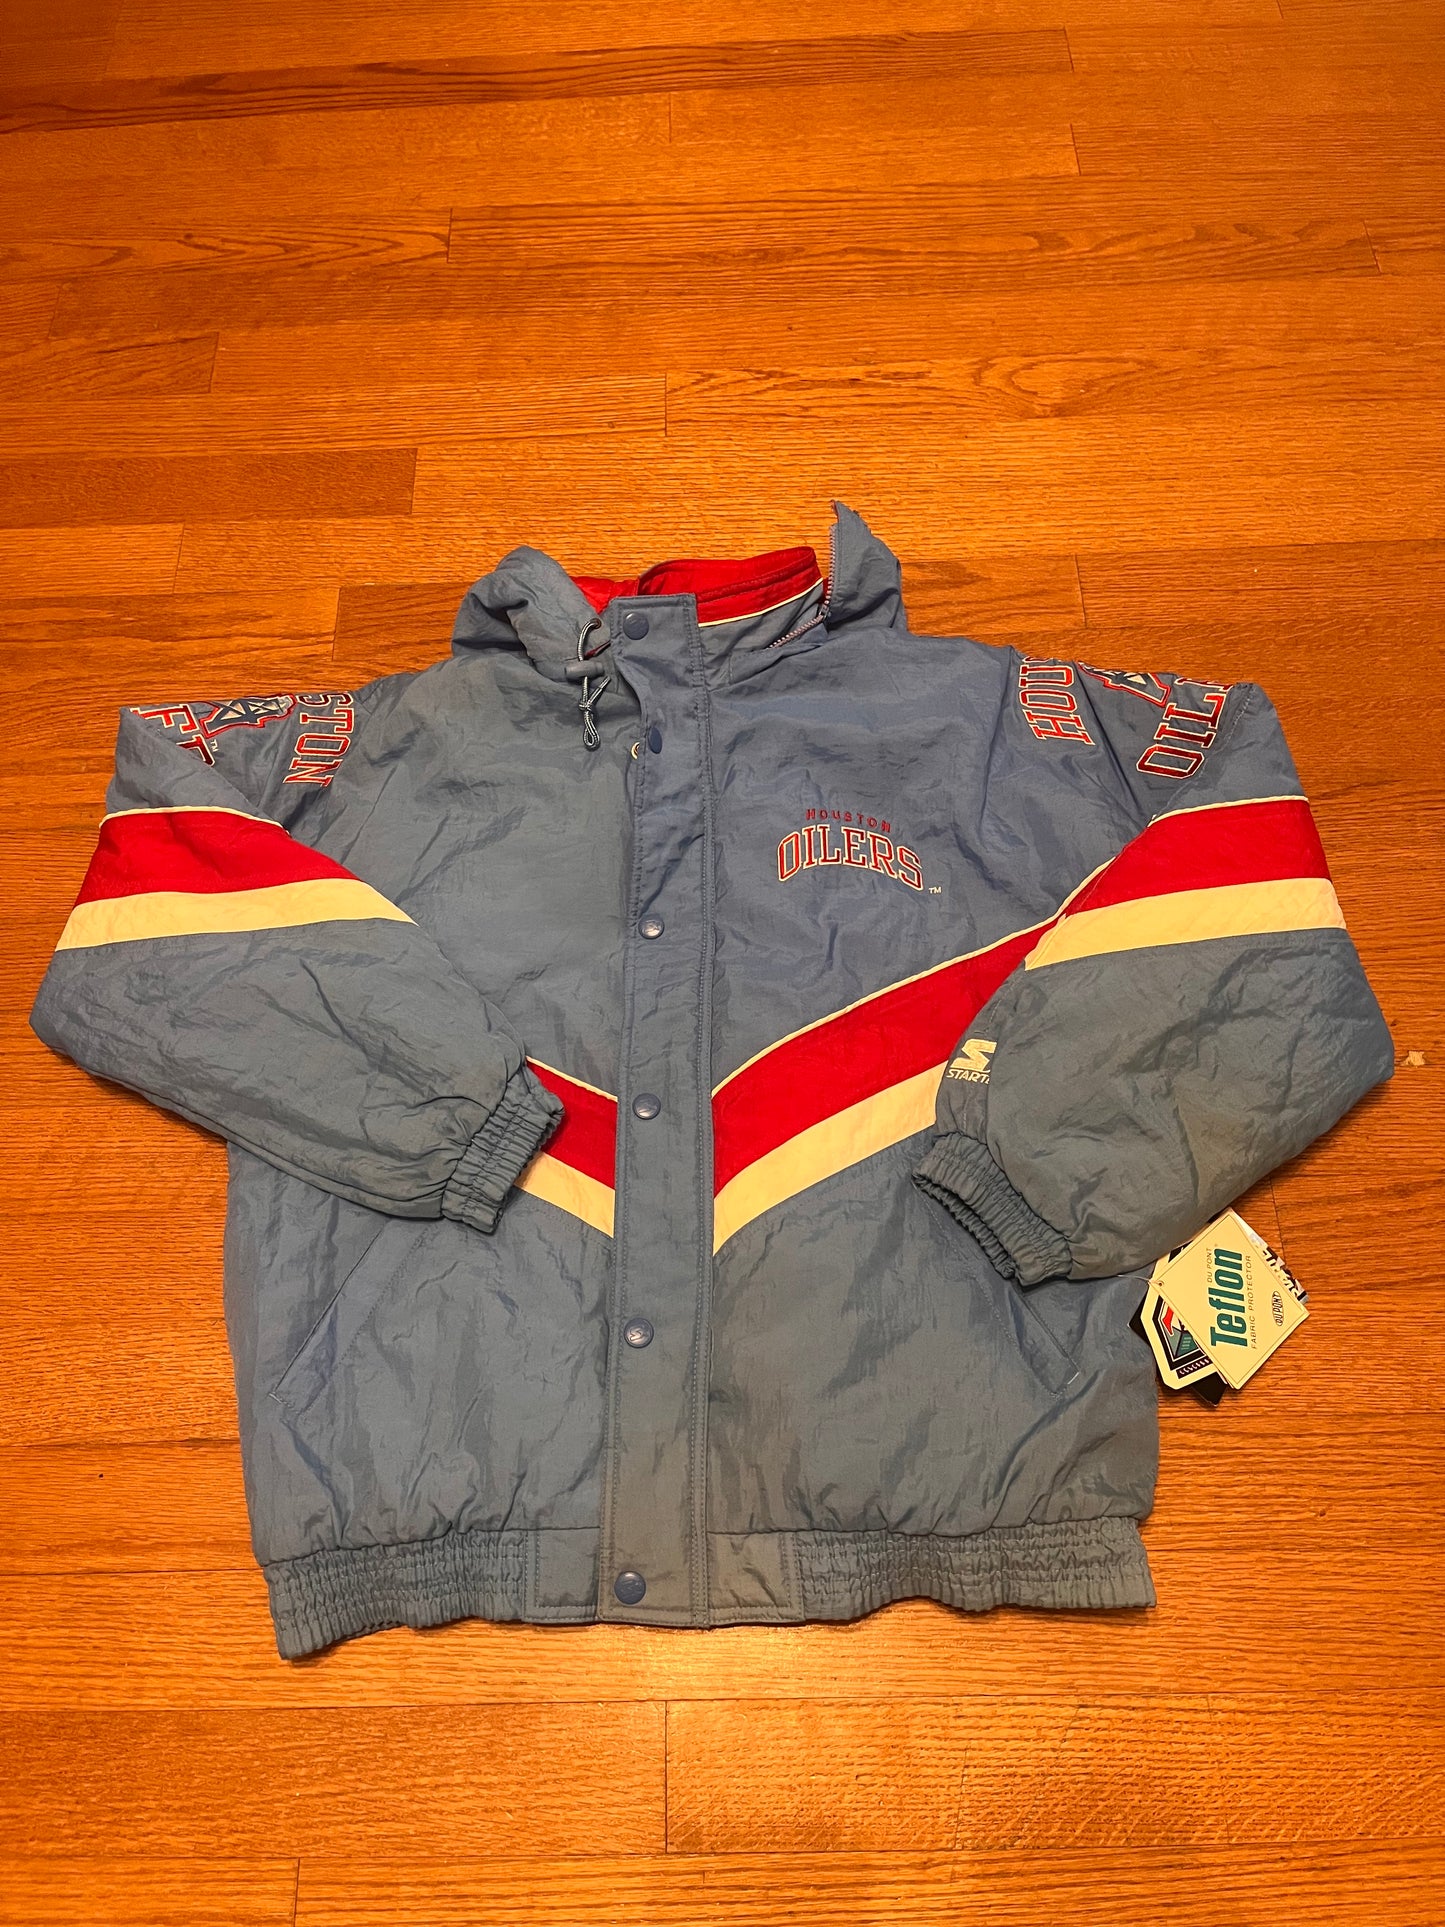 Vintage Oilers Jacket